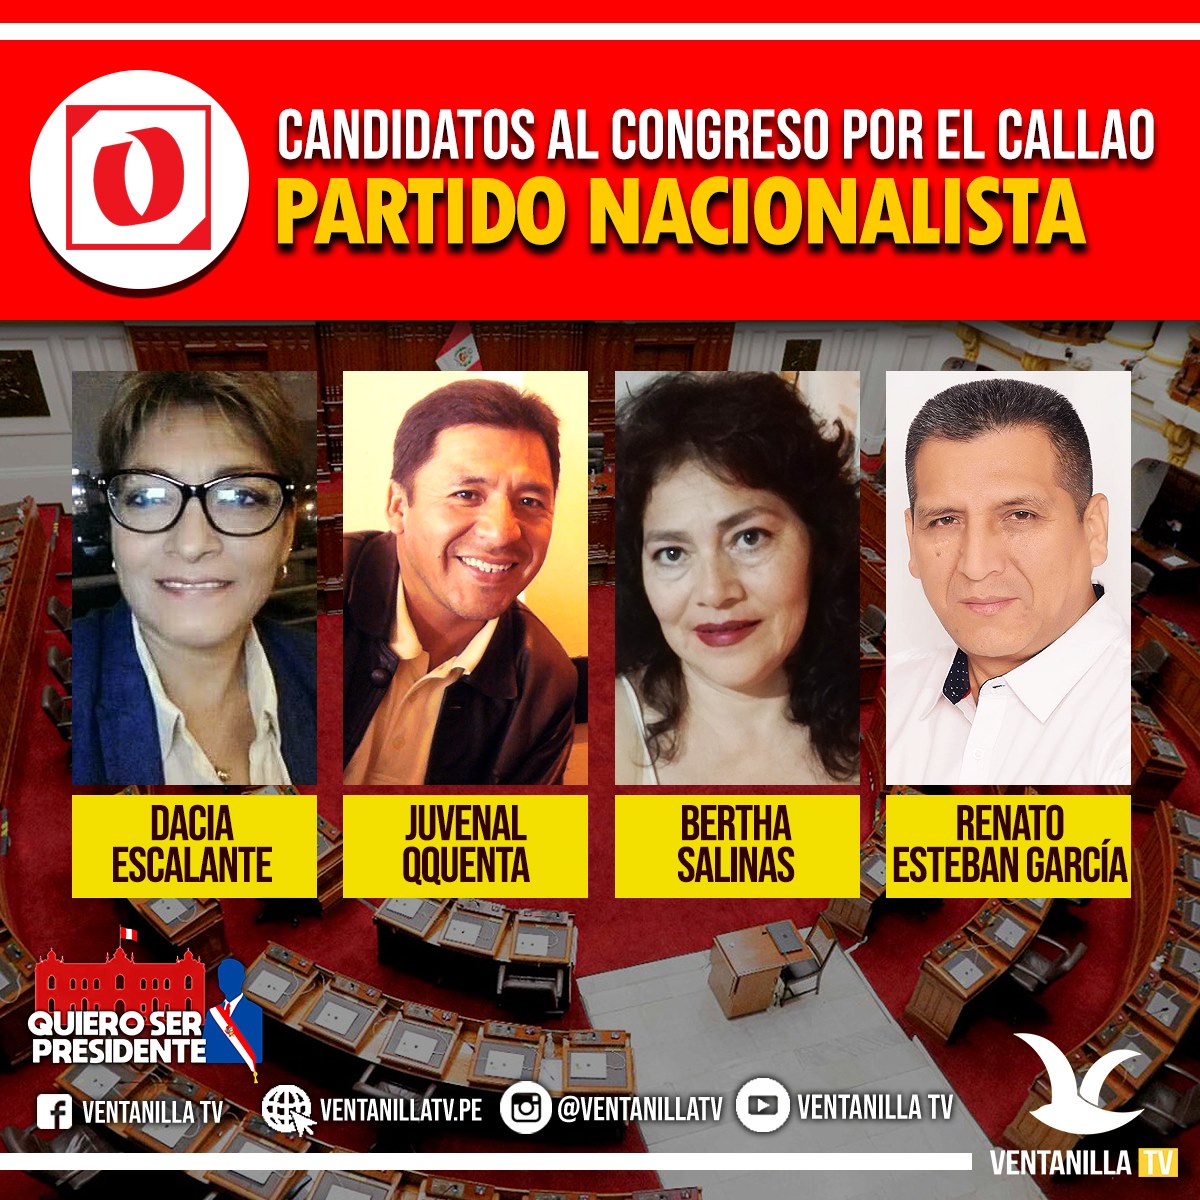 Conozca A Los Candidatos Al Congreso De La RepÚblica 2021 Ventanilla Tv 9672